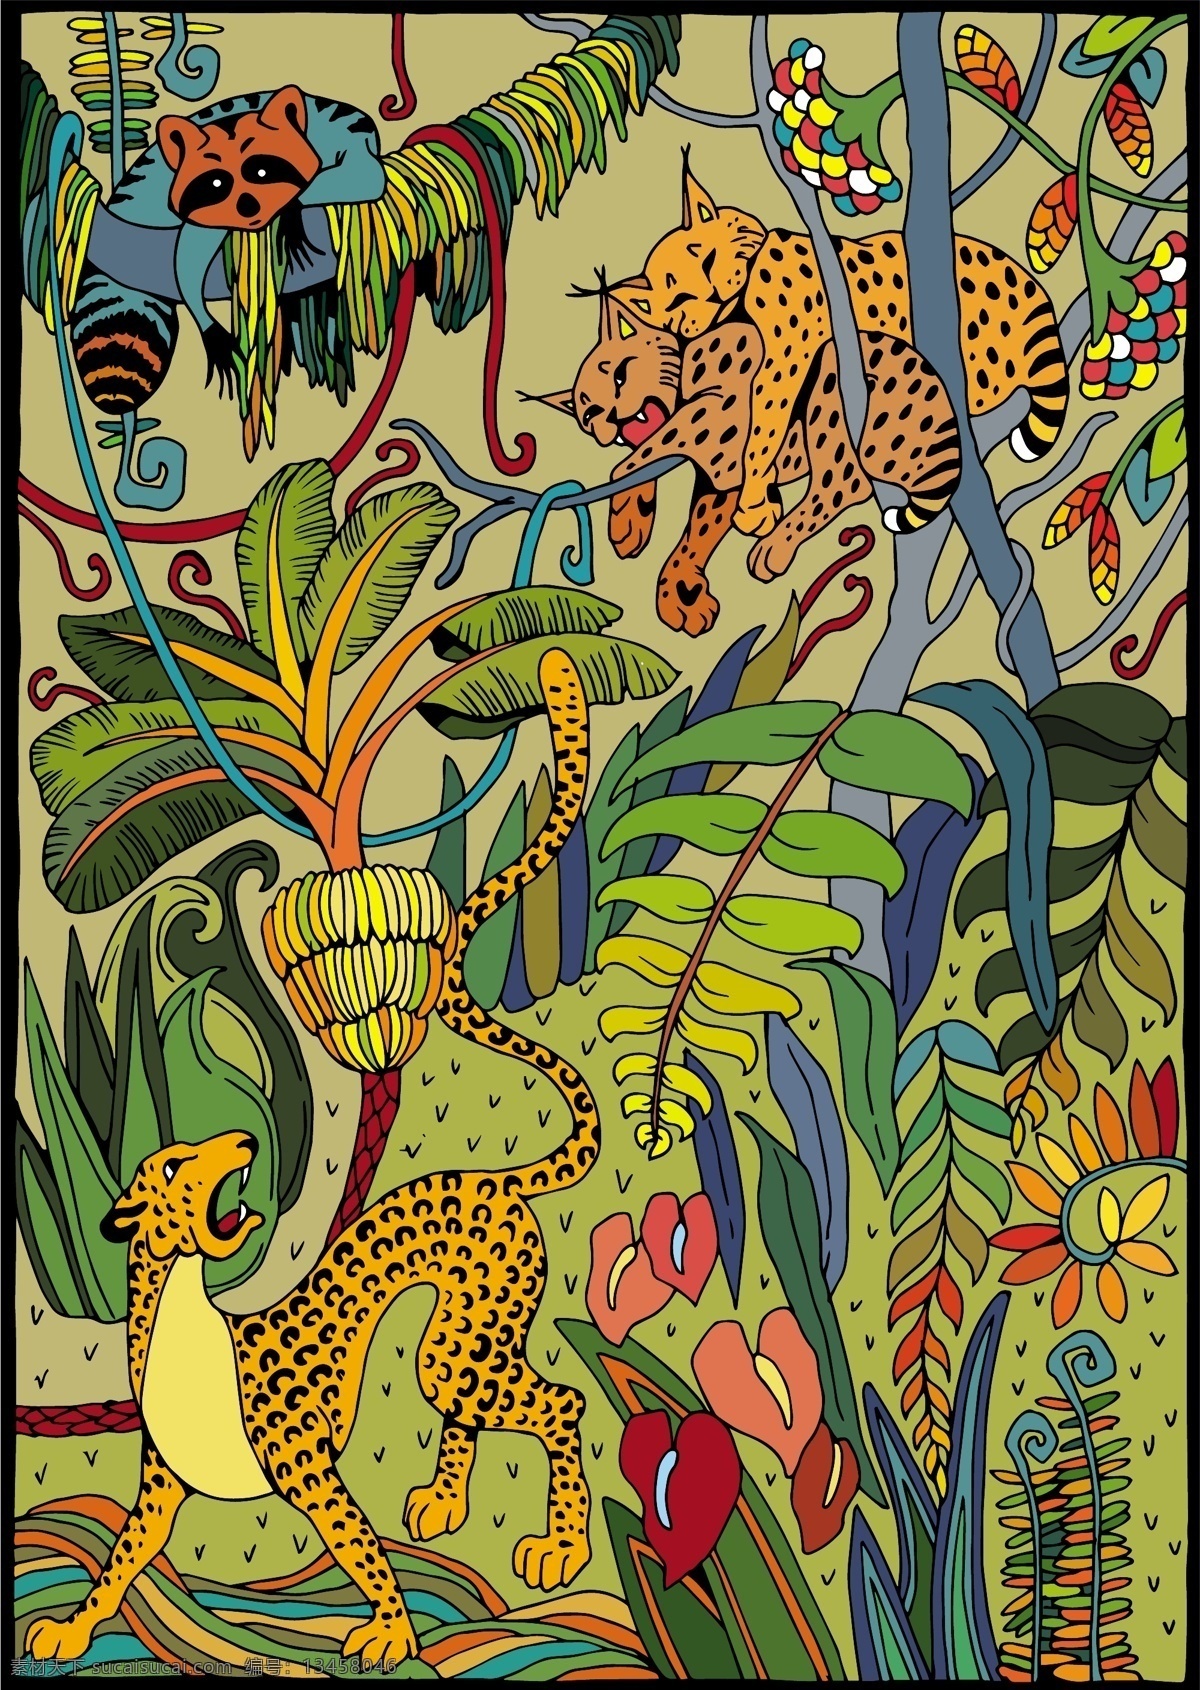 热带雨林 动物 印花 布匹 图案 豹 热带植物 狐 狸 雨林 布匹图案 童装矢量图案 生物世界 野生动物